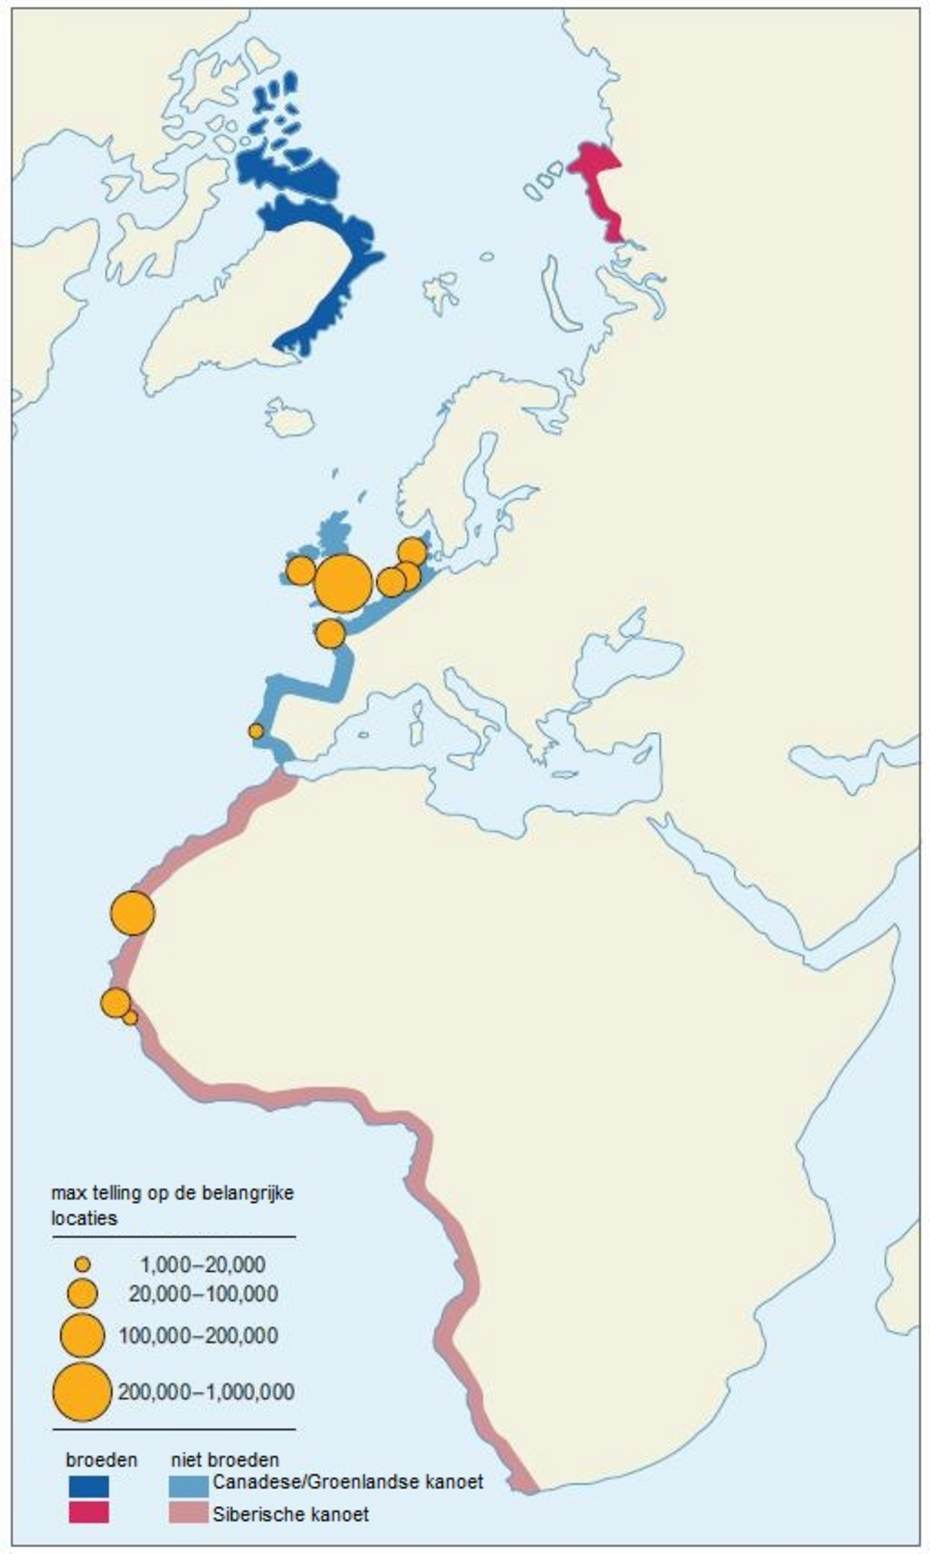 Migratieroutes van de Groenlandse kanoeten en Siberische kanoeten. Bron: Oudman, T. (2017) 